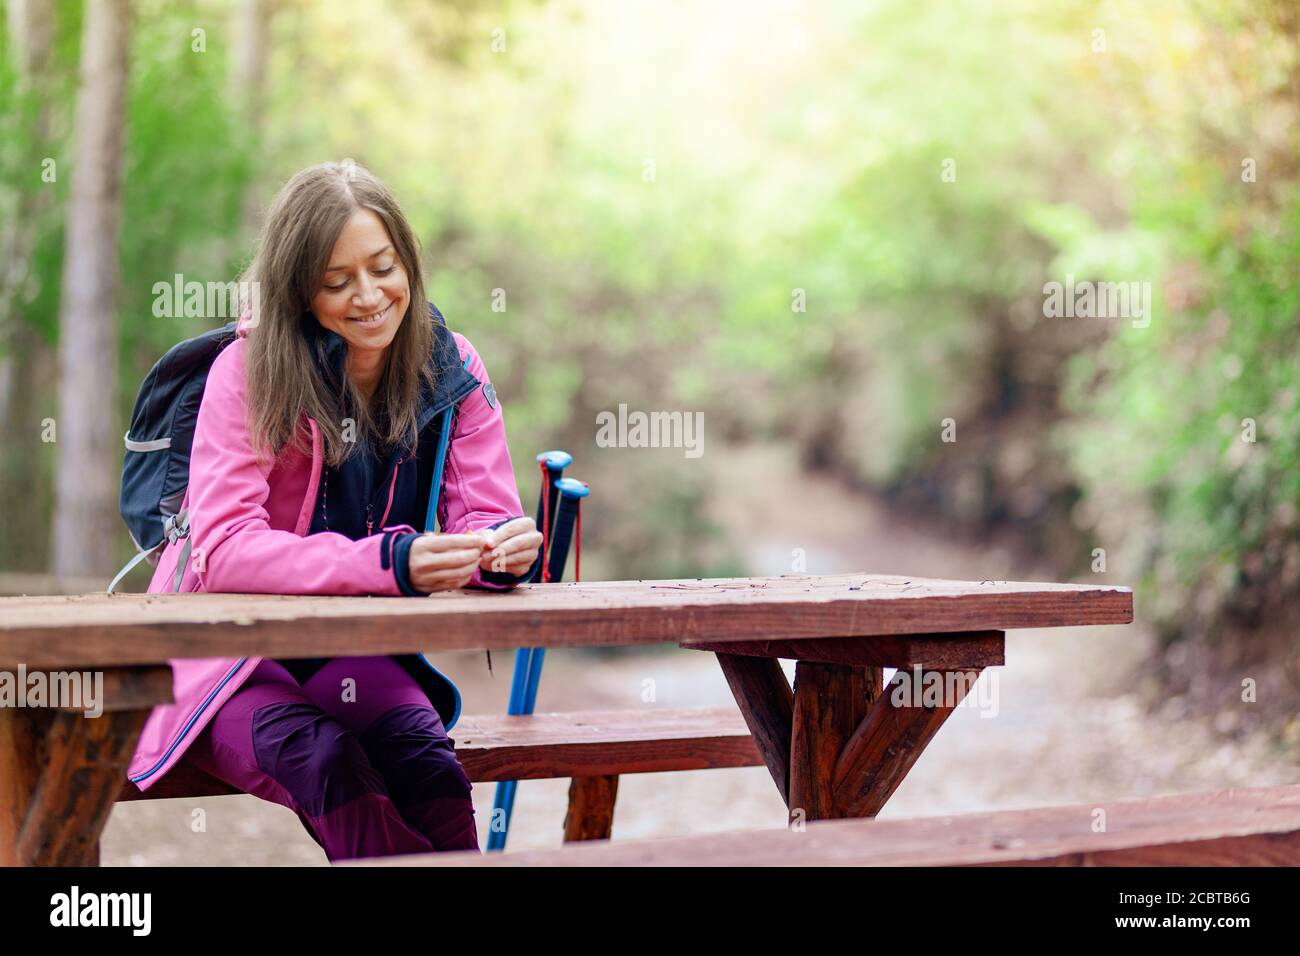 Ragazza escursionista che riposa su una panchina nella foresta. Zaino in spalla con giacca rosa che tiene foglie secche d'autunno. Foto Stock